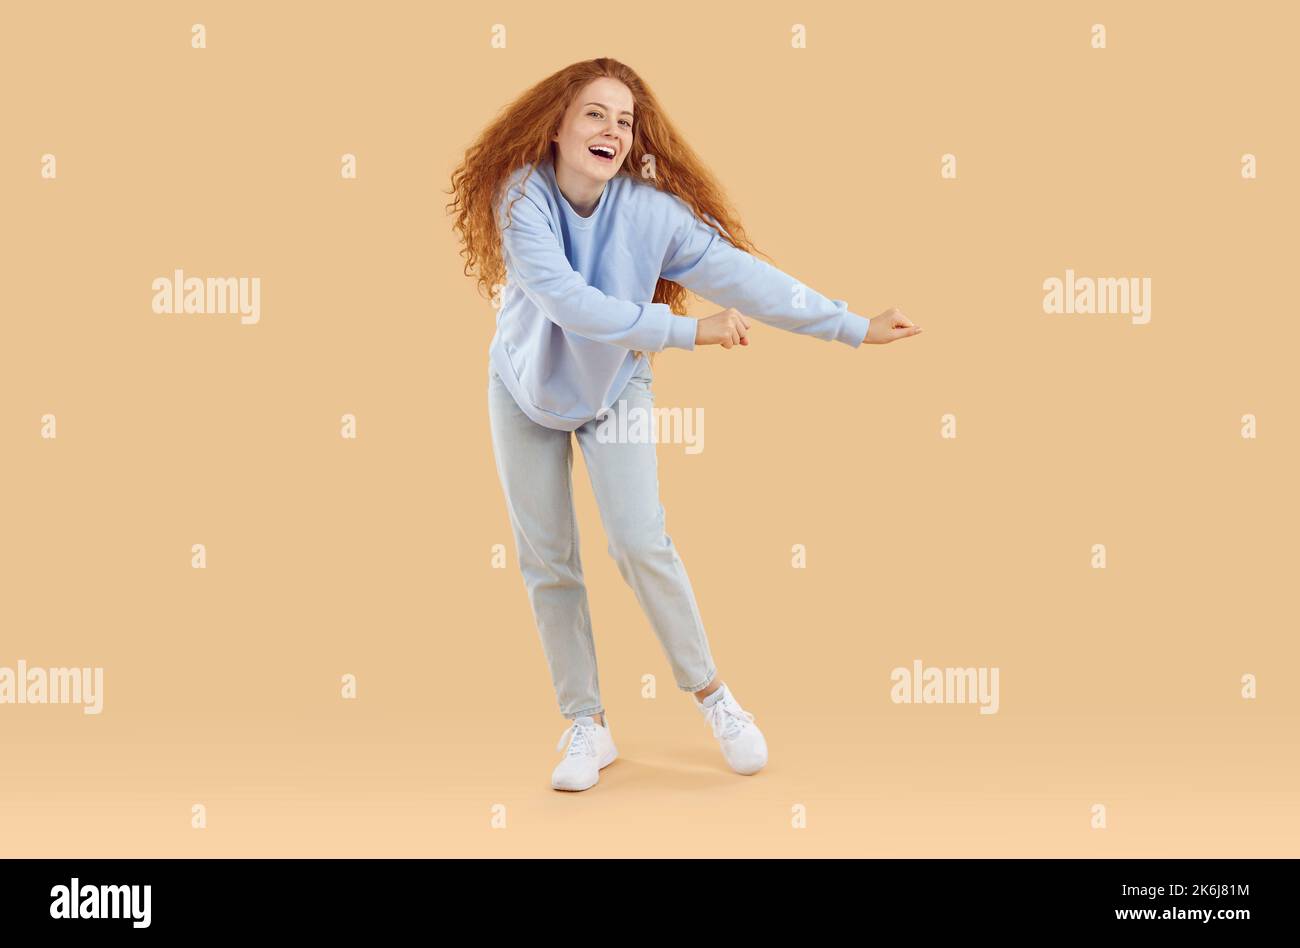 Porträt von lustigen fröhlichen jungen Frau in lässigem Outfit tanzen auf beigefarbenem Studiohintergrund Stockfoto